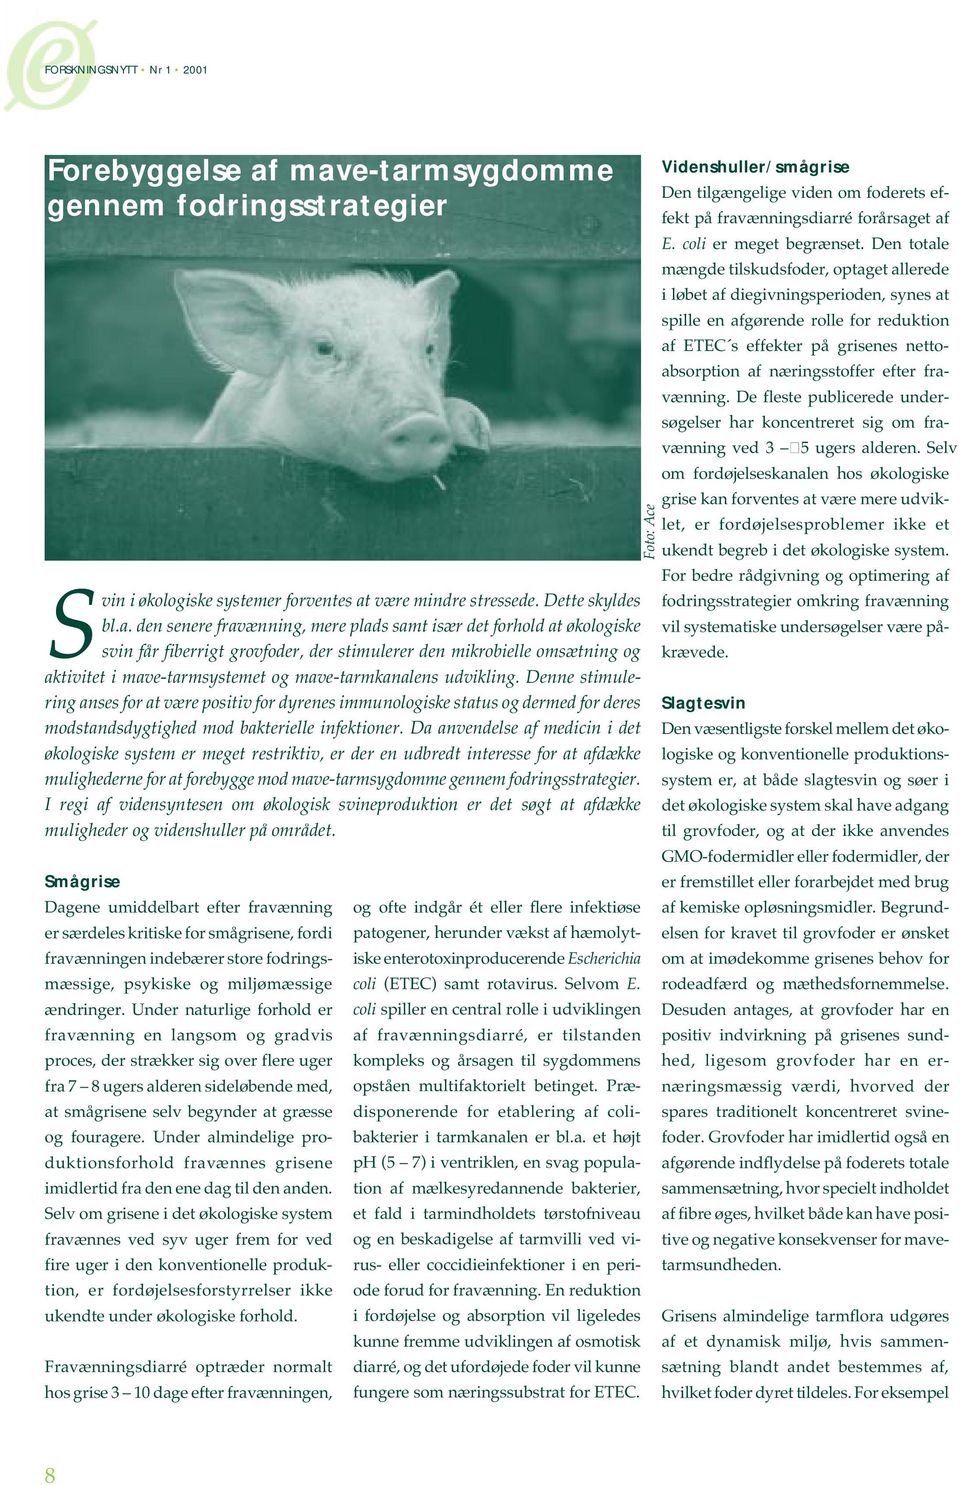 svin får fiberrigt grovfoder, der stimulerer den mikrobielle omsætning og aktivitet i mave-tarmsystemet og mave-tarmkanalens udvikling.